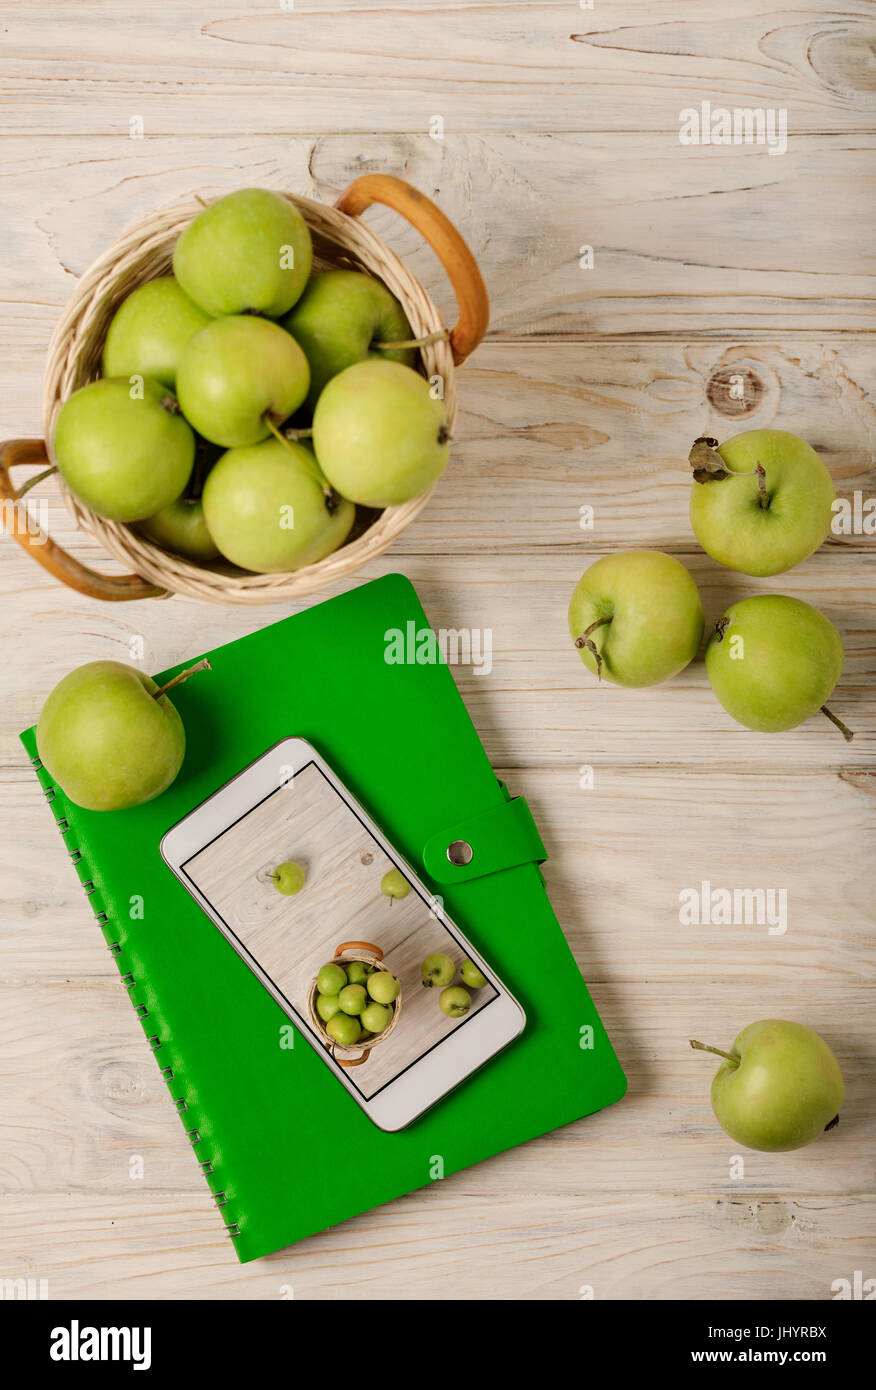 La pomme verte dans un panier, vert et blanc téléphone portable sur un fond en bois clair. Focus sélectif. Banque D'Images